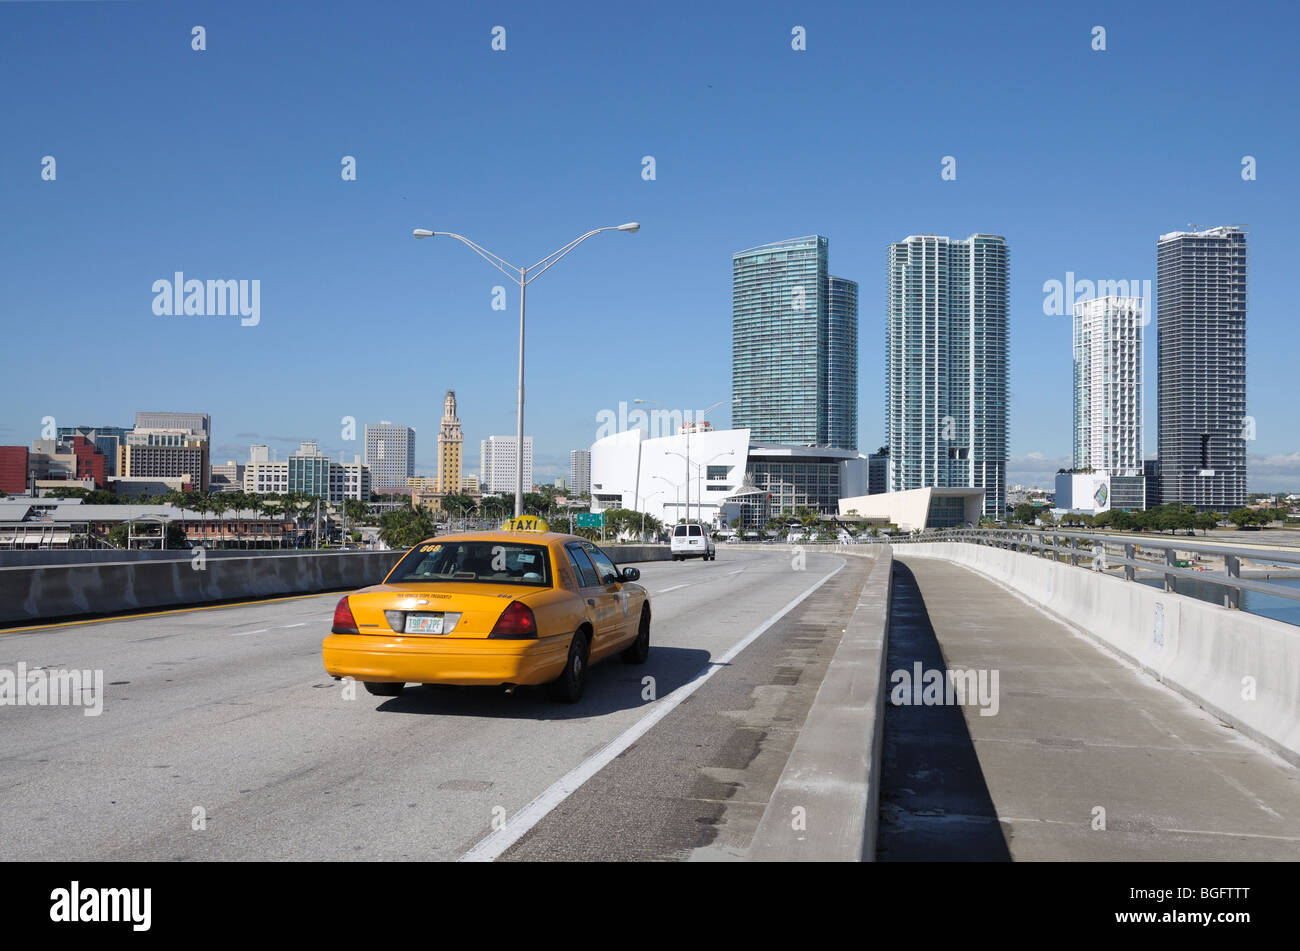 Taxi on the Bridge at Downtown Miami, Florida USA Stock Photo